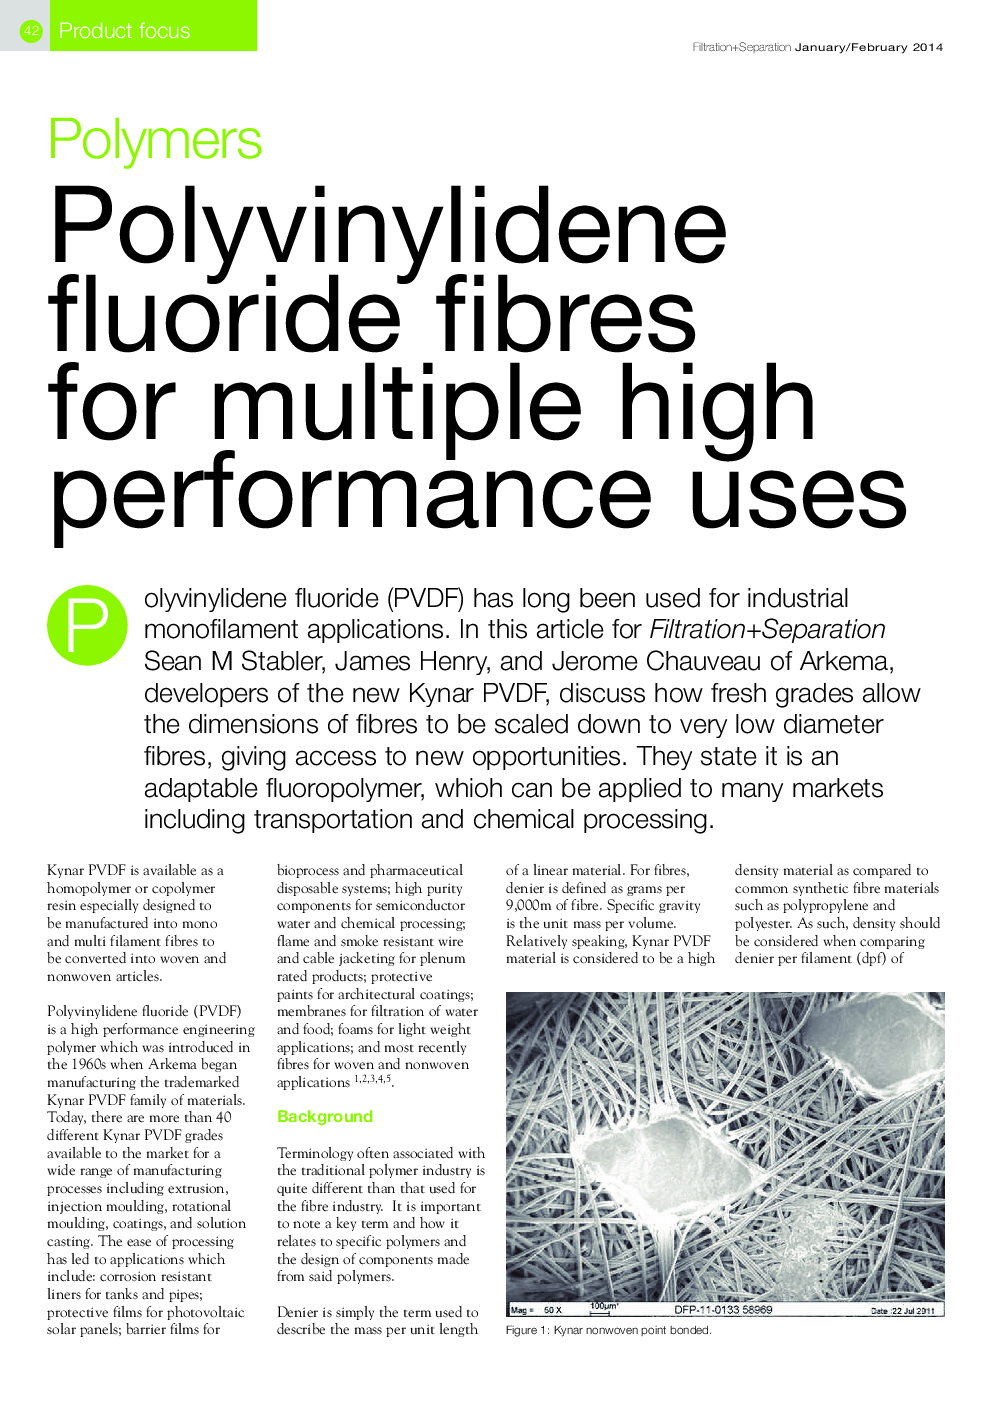 Polyvinylidene fluoride fibres for multiple high performance uses